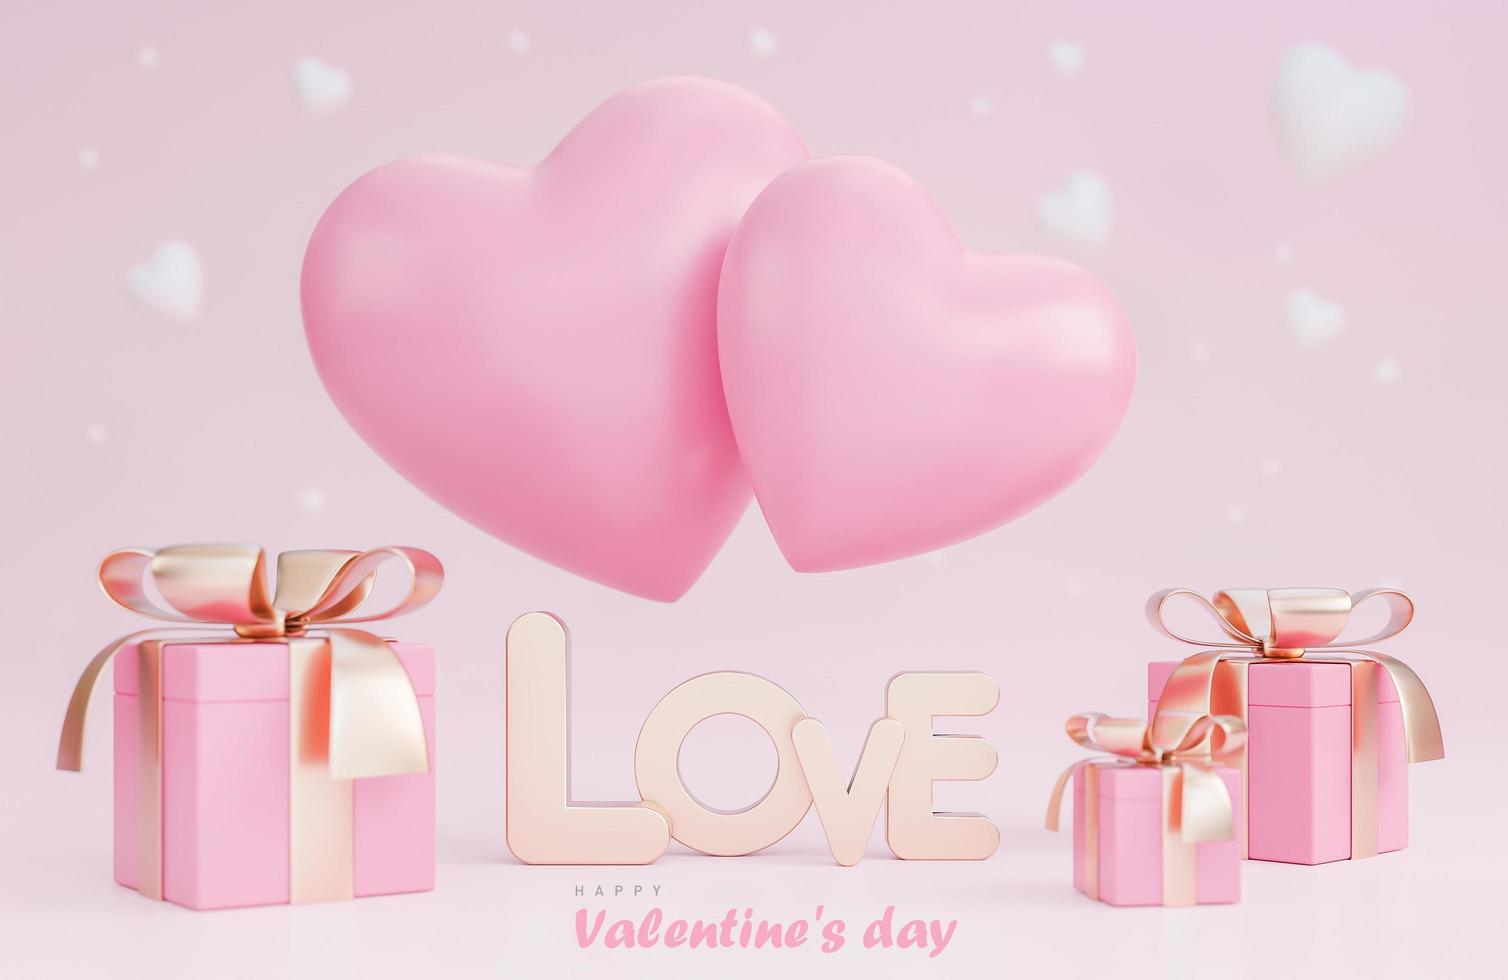 feliz dia dos namorados banner com corações 3d, caixa de presente e decorações românticas de dia dos namorados em fundo rosa., modelo 3d e ilustração. foto